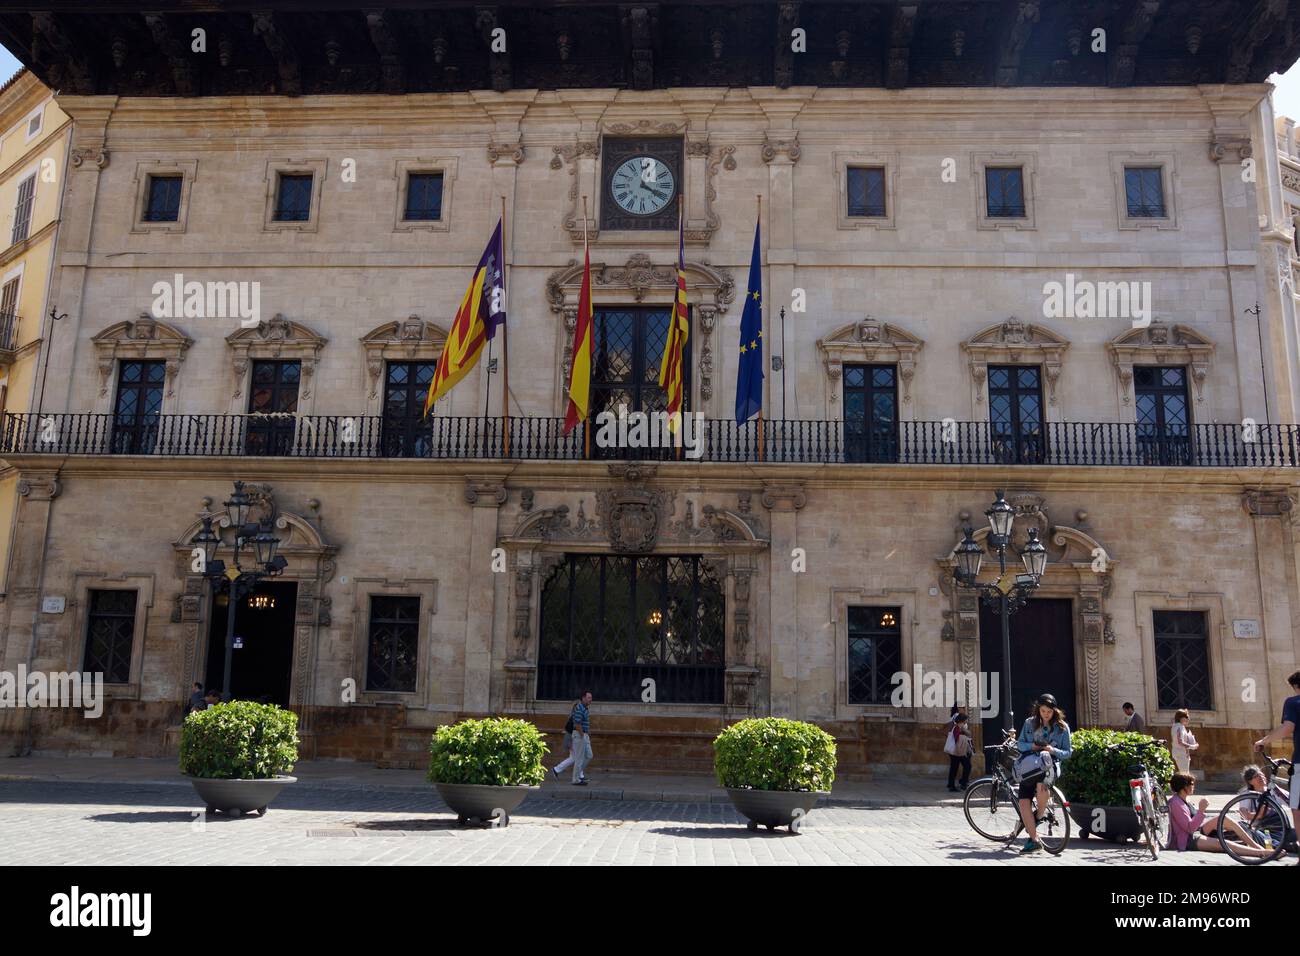 Palma, Mallorca,Spain - Plaza Cort at the City Hall. Stock Photo